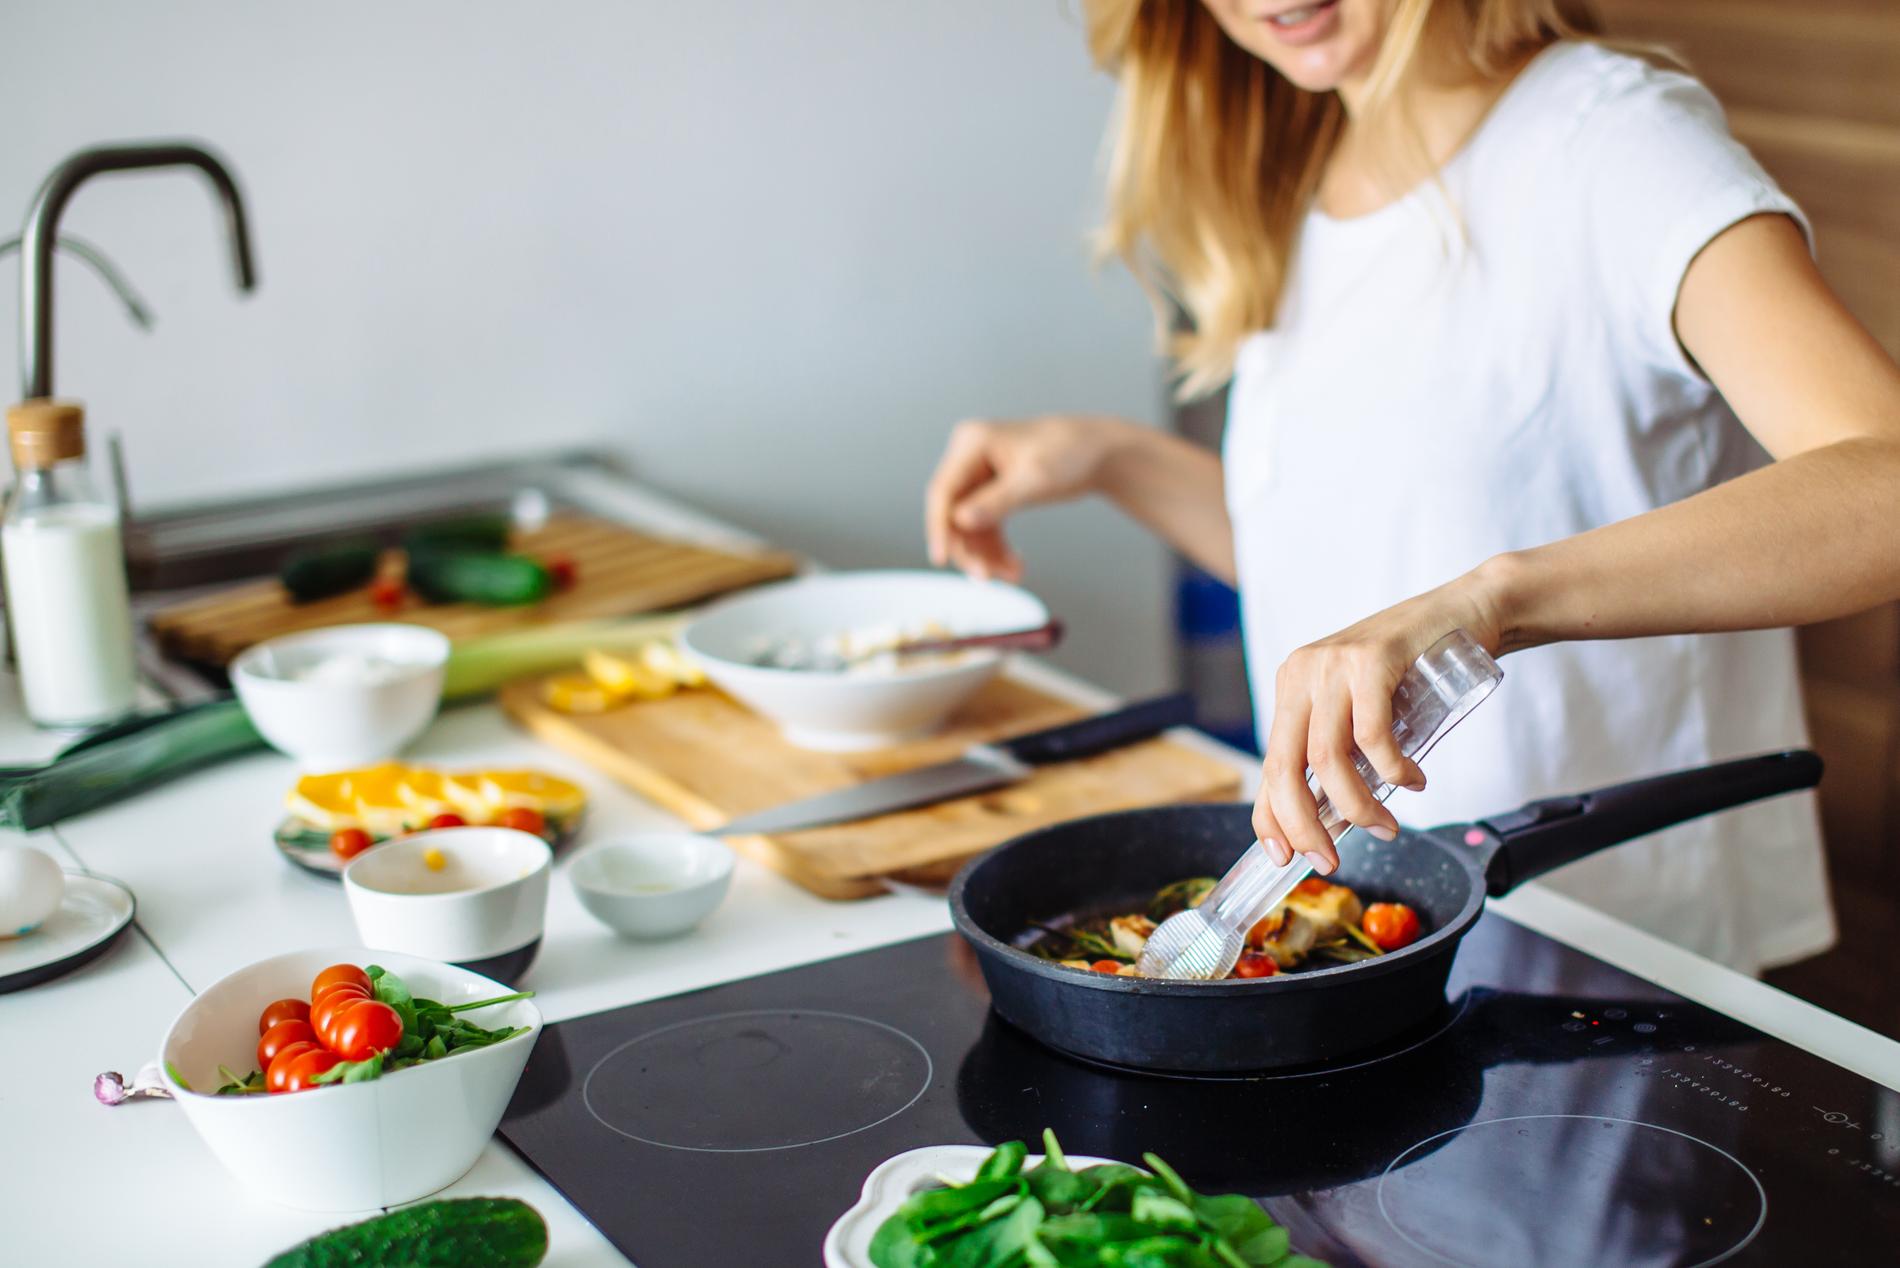 Unge er blitt bedre kokker under korona, ifølge en undersøkelse utført av Norstat for Too good to go. 